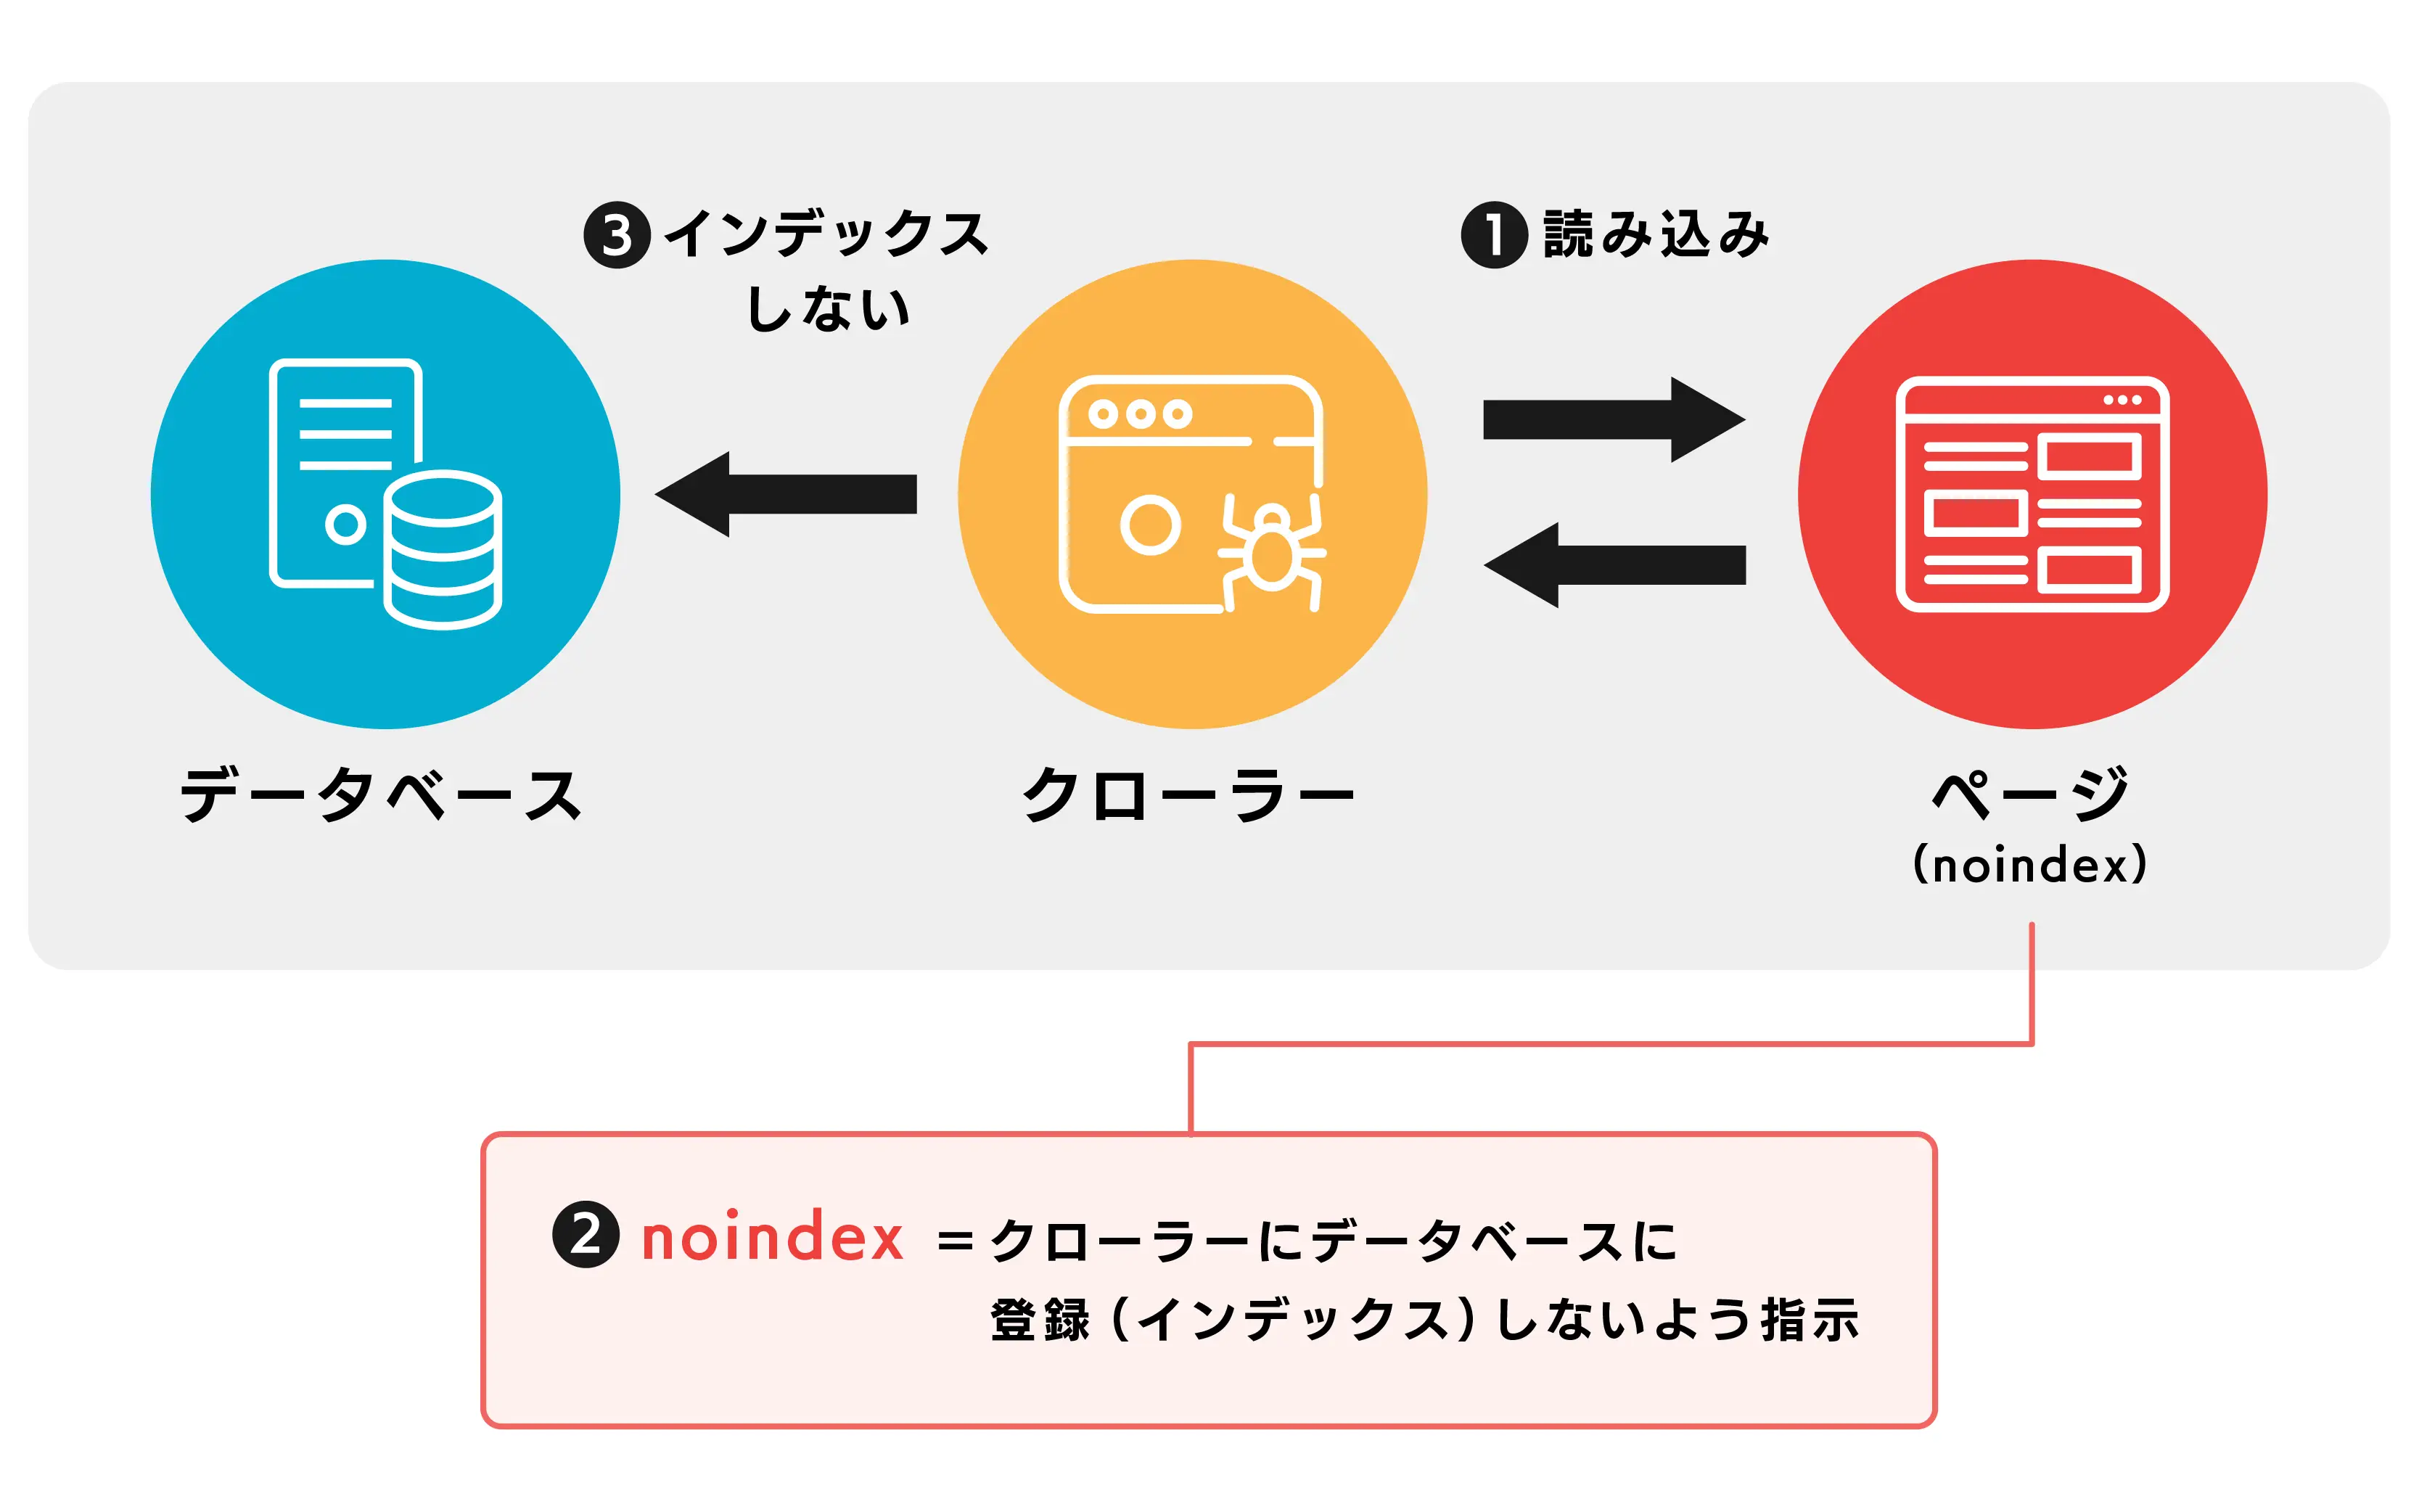 クローラーがnoindex指示に従ってページをデータベースにインデックスしないプロセスを示す図